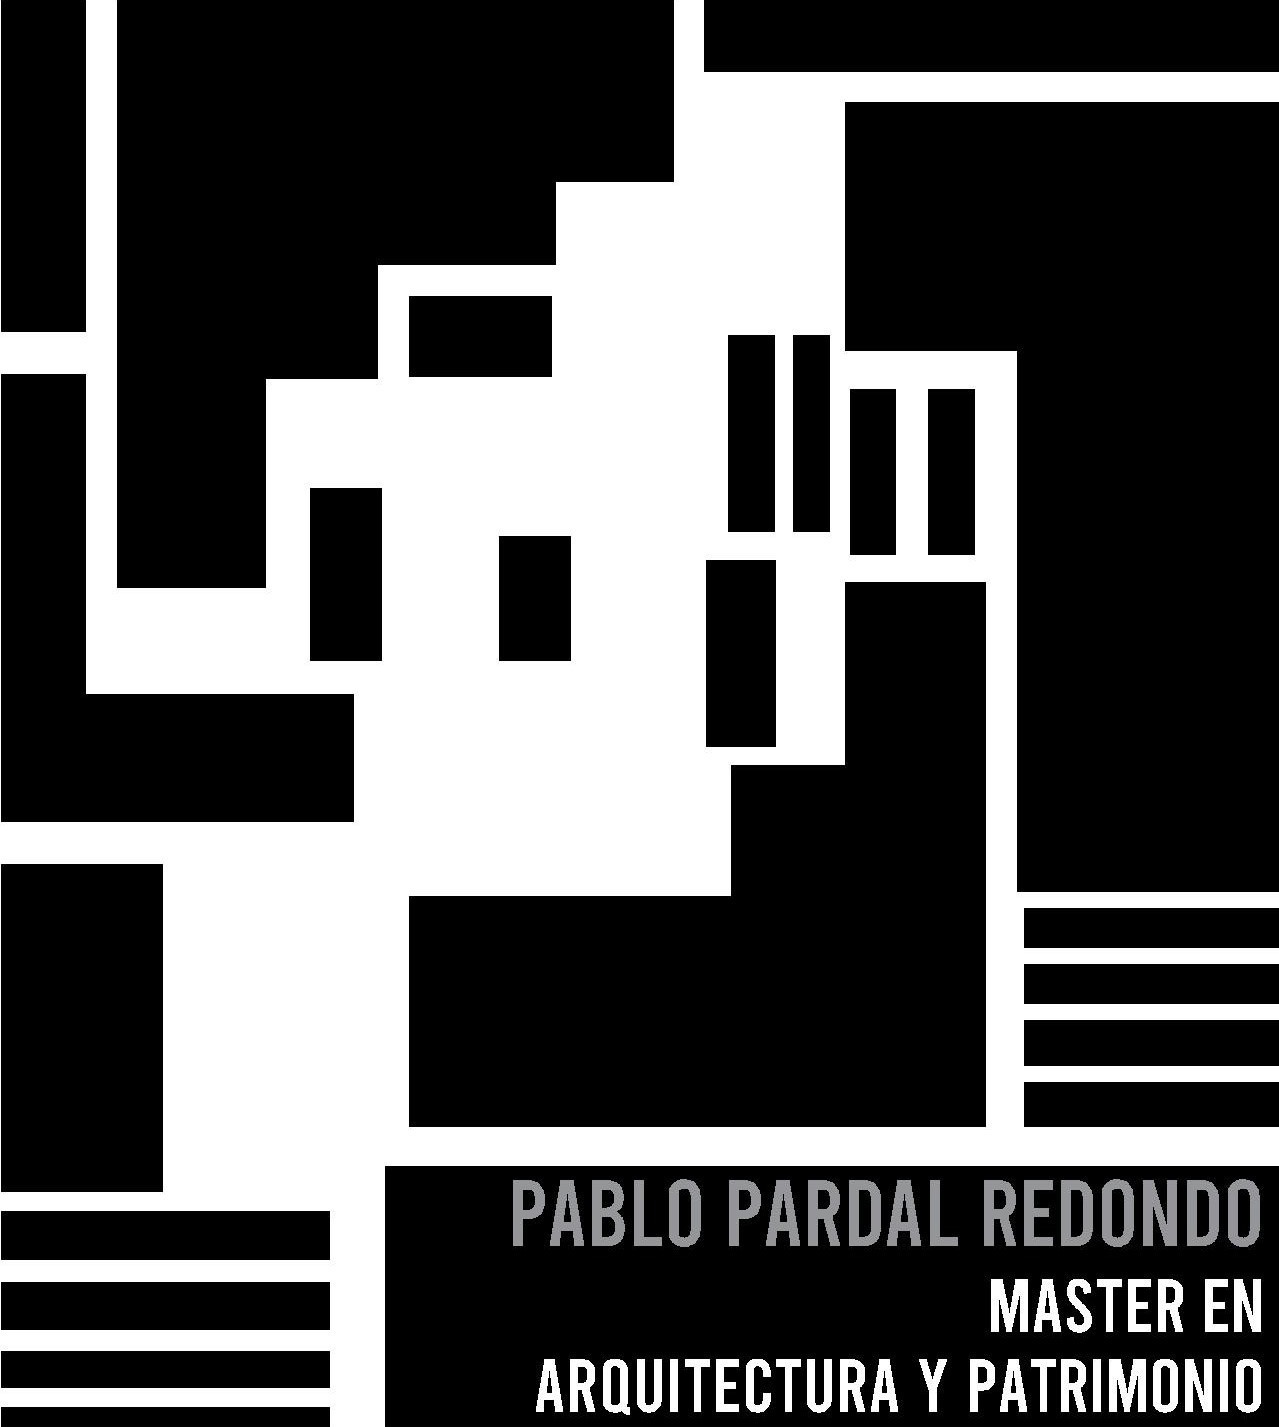 Pablo Pardal